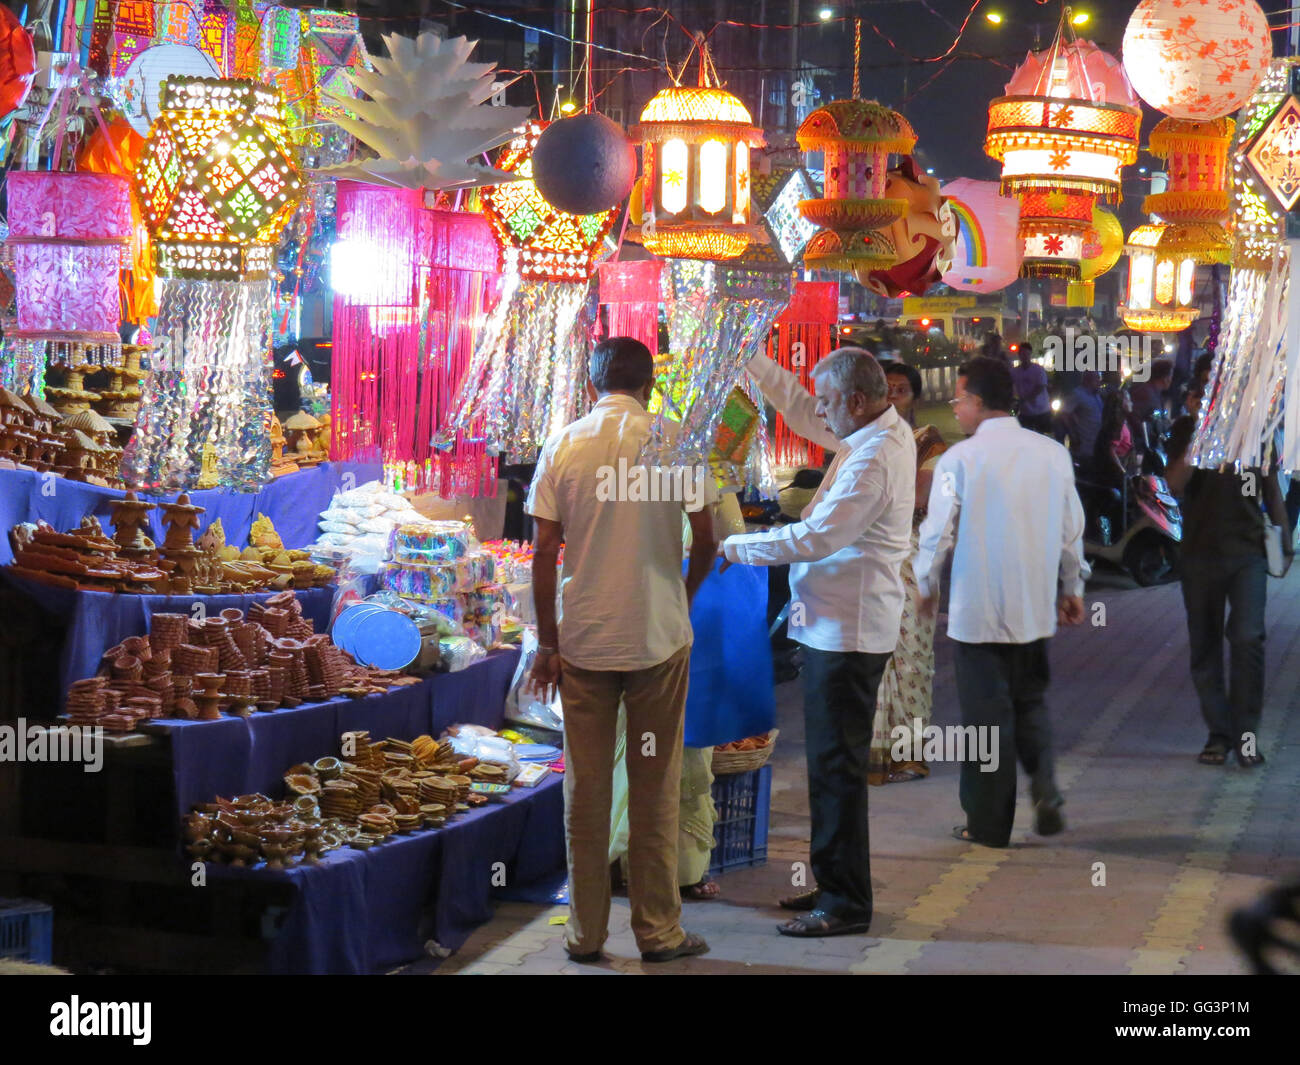 People shopping per lanterne e altri oggetti tradizionali in occasione della festa di Diwali in India Foto Stock